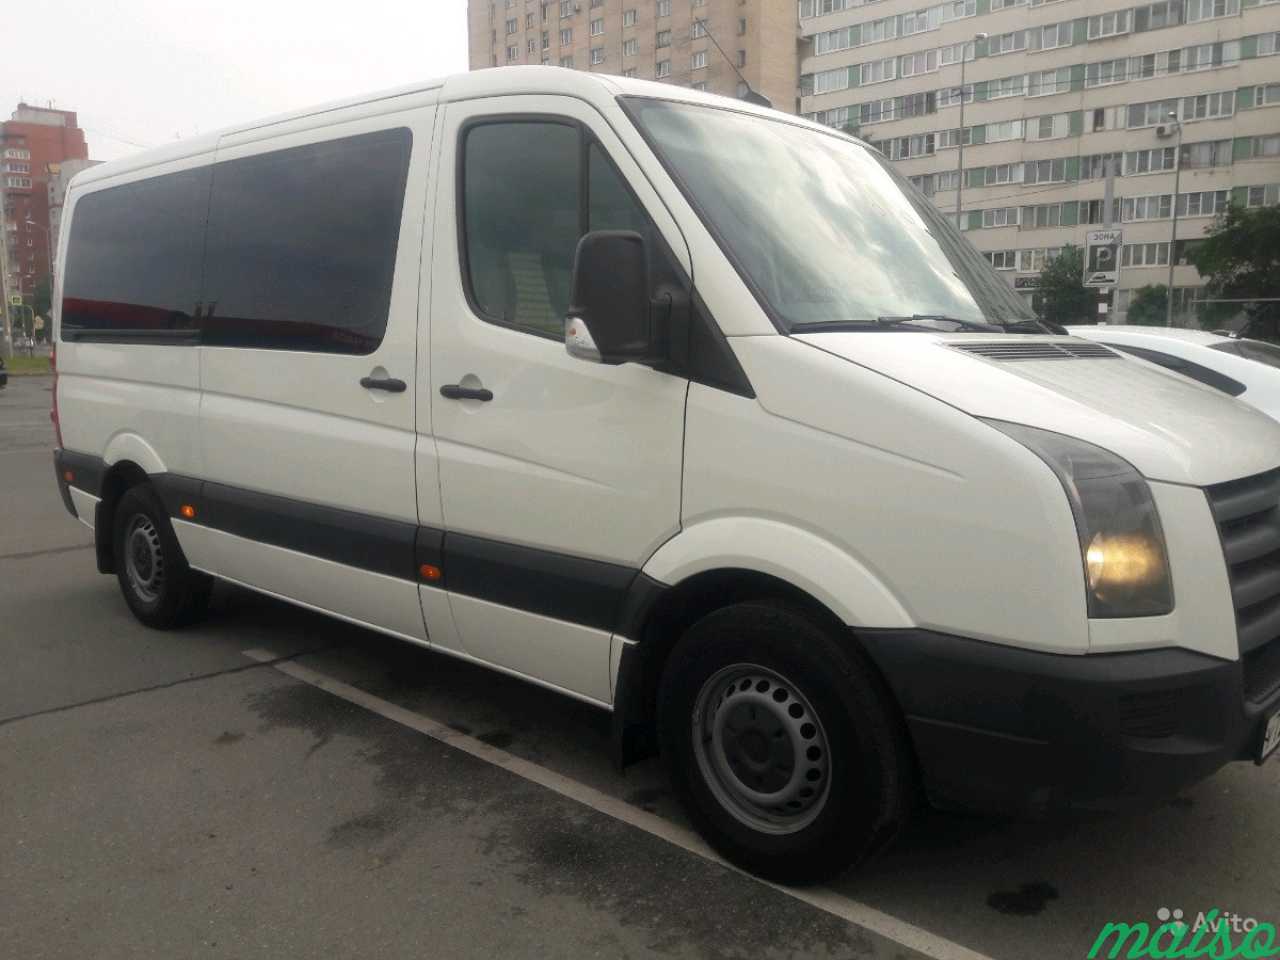 Заказ микроавтобуса в Санкт-Петербурге. Фото 1